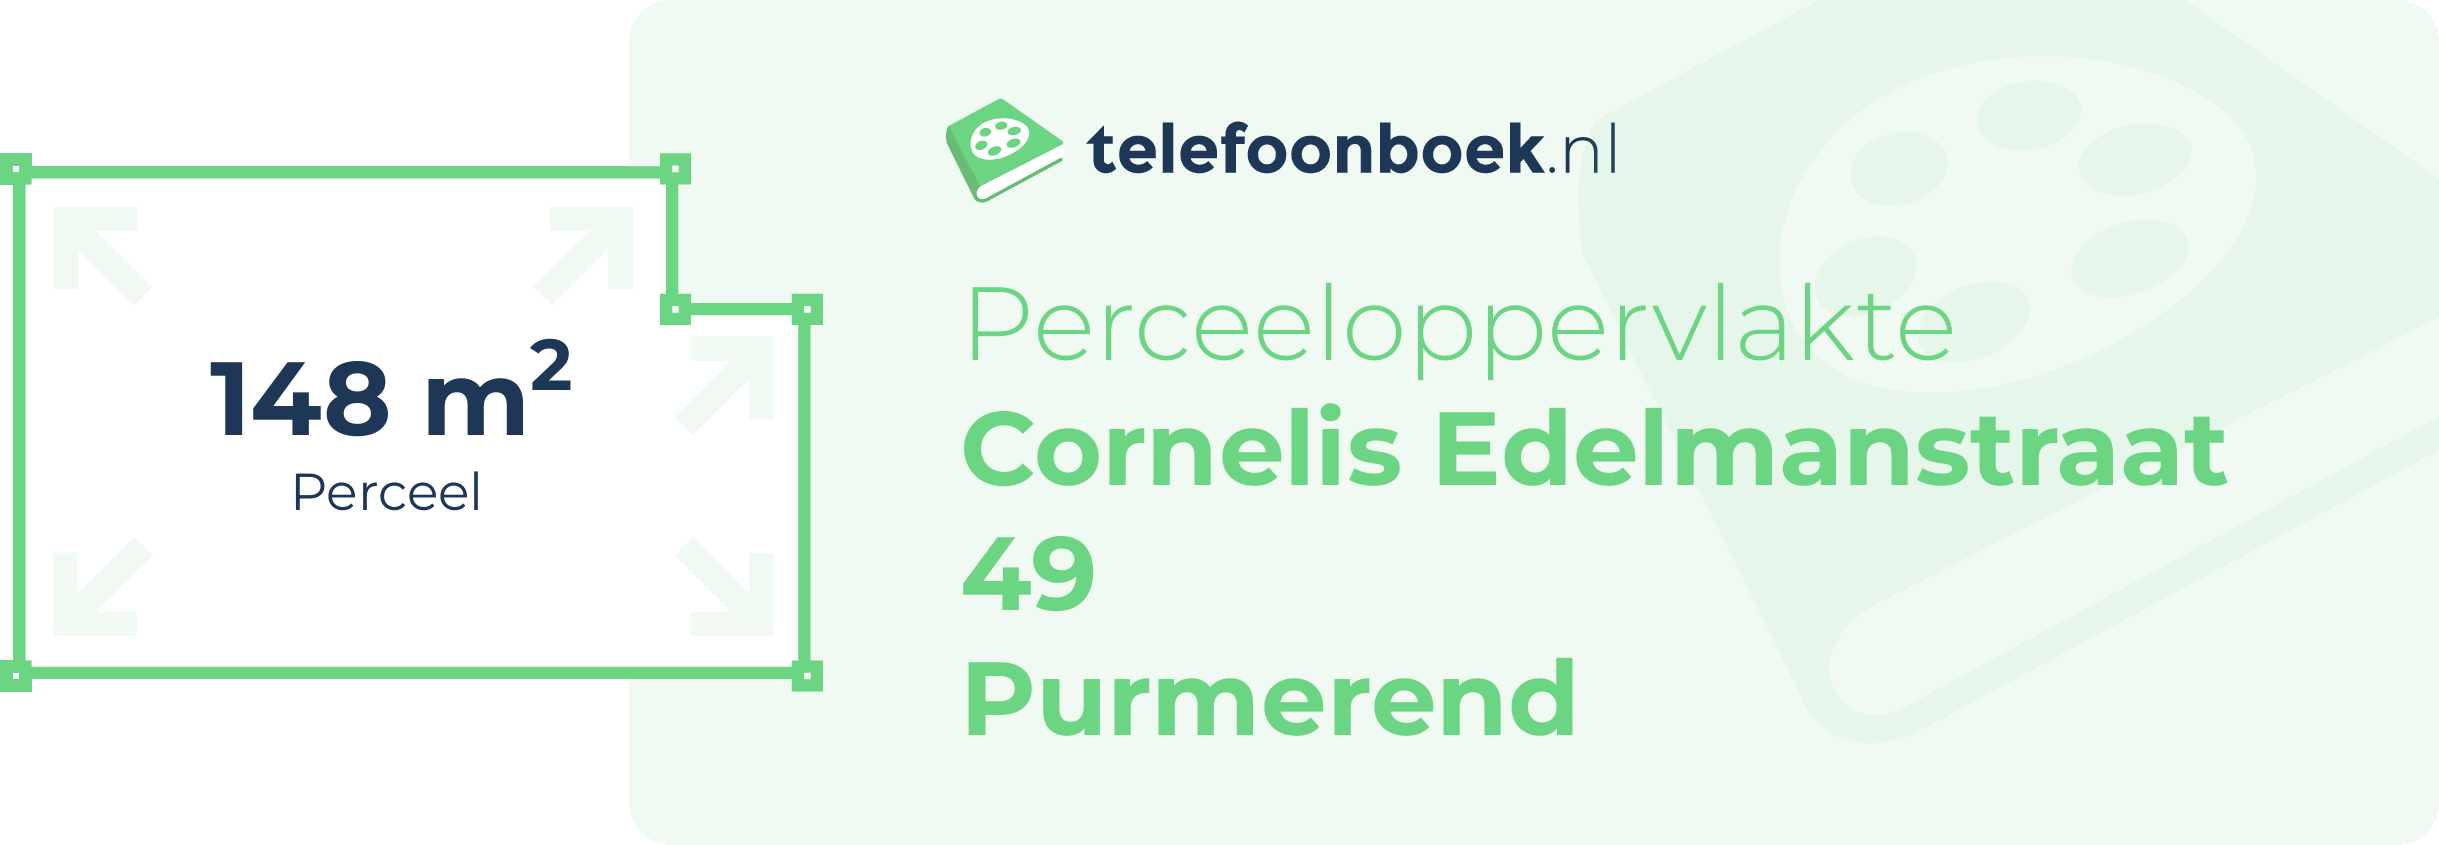 Perceeloppervlakte Cornelis Edelmanstraat 49 Purmerend